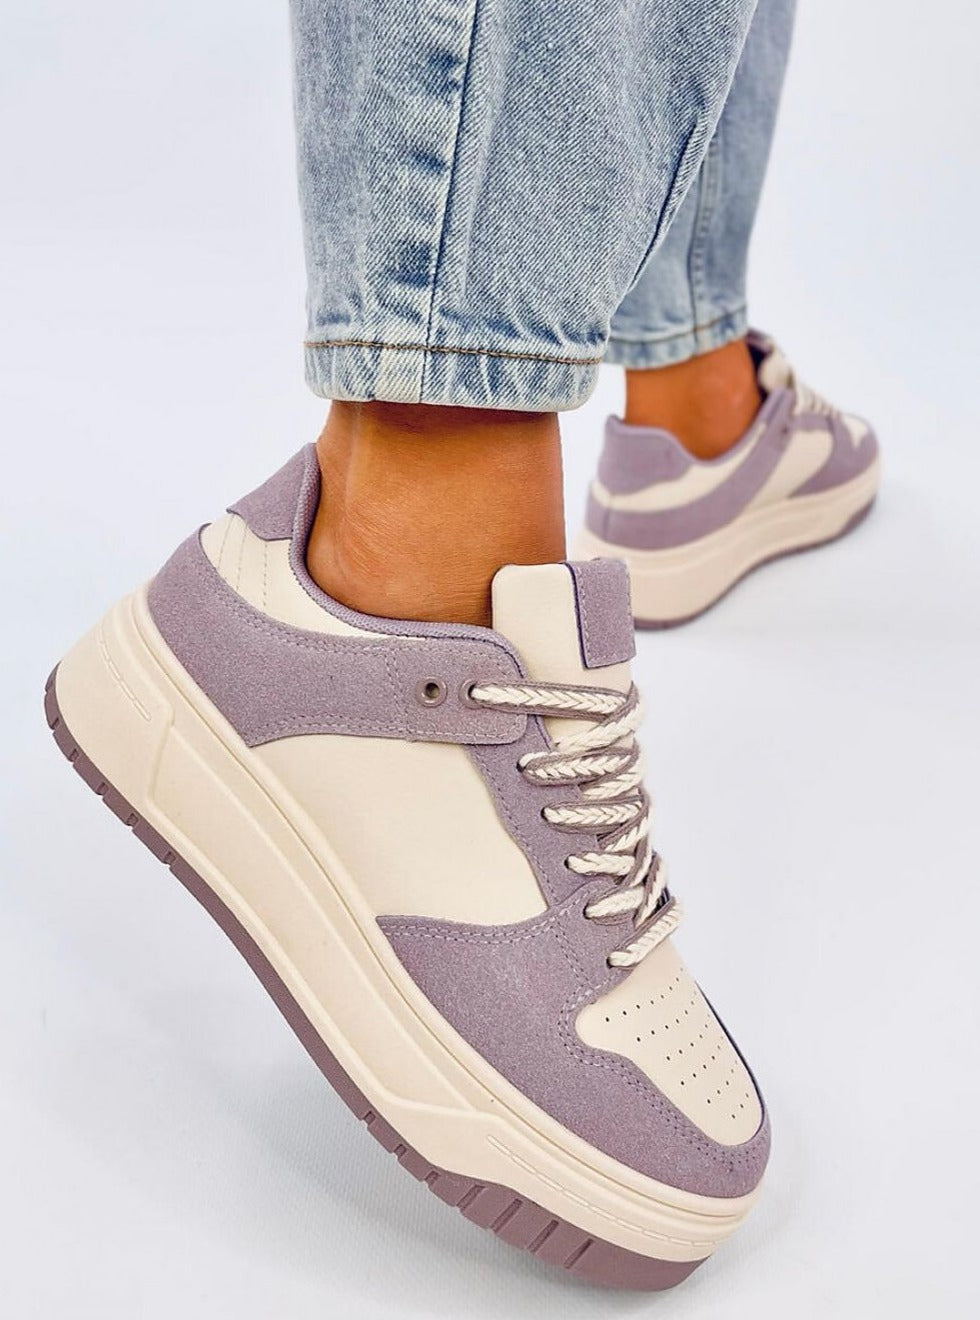 TEEK - Lavender Looker Platform Sneakers SHOES TEEK MH   